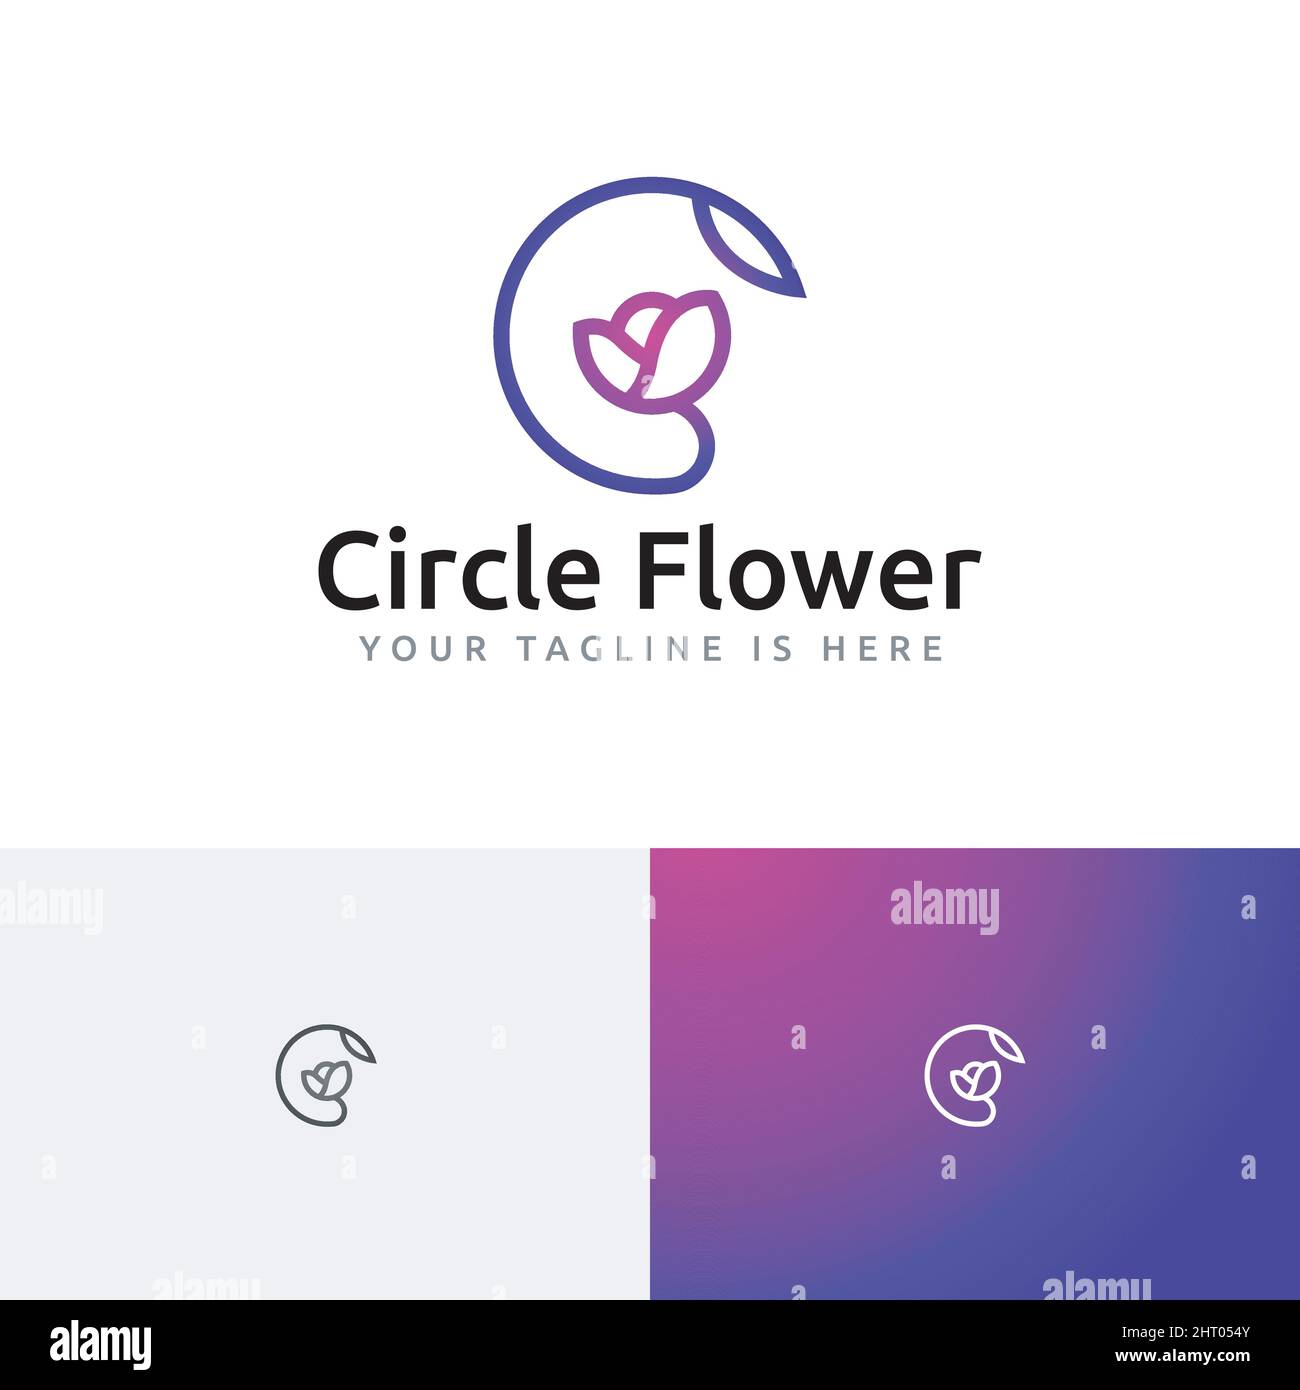 Cercle de beauté Floral Floral Florist monoline logo Template Illustration de Vecteur